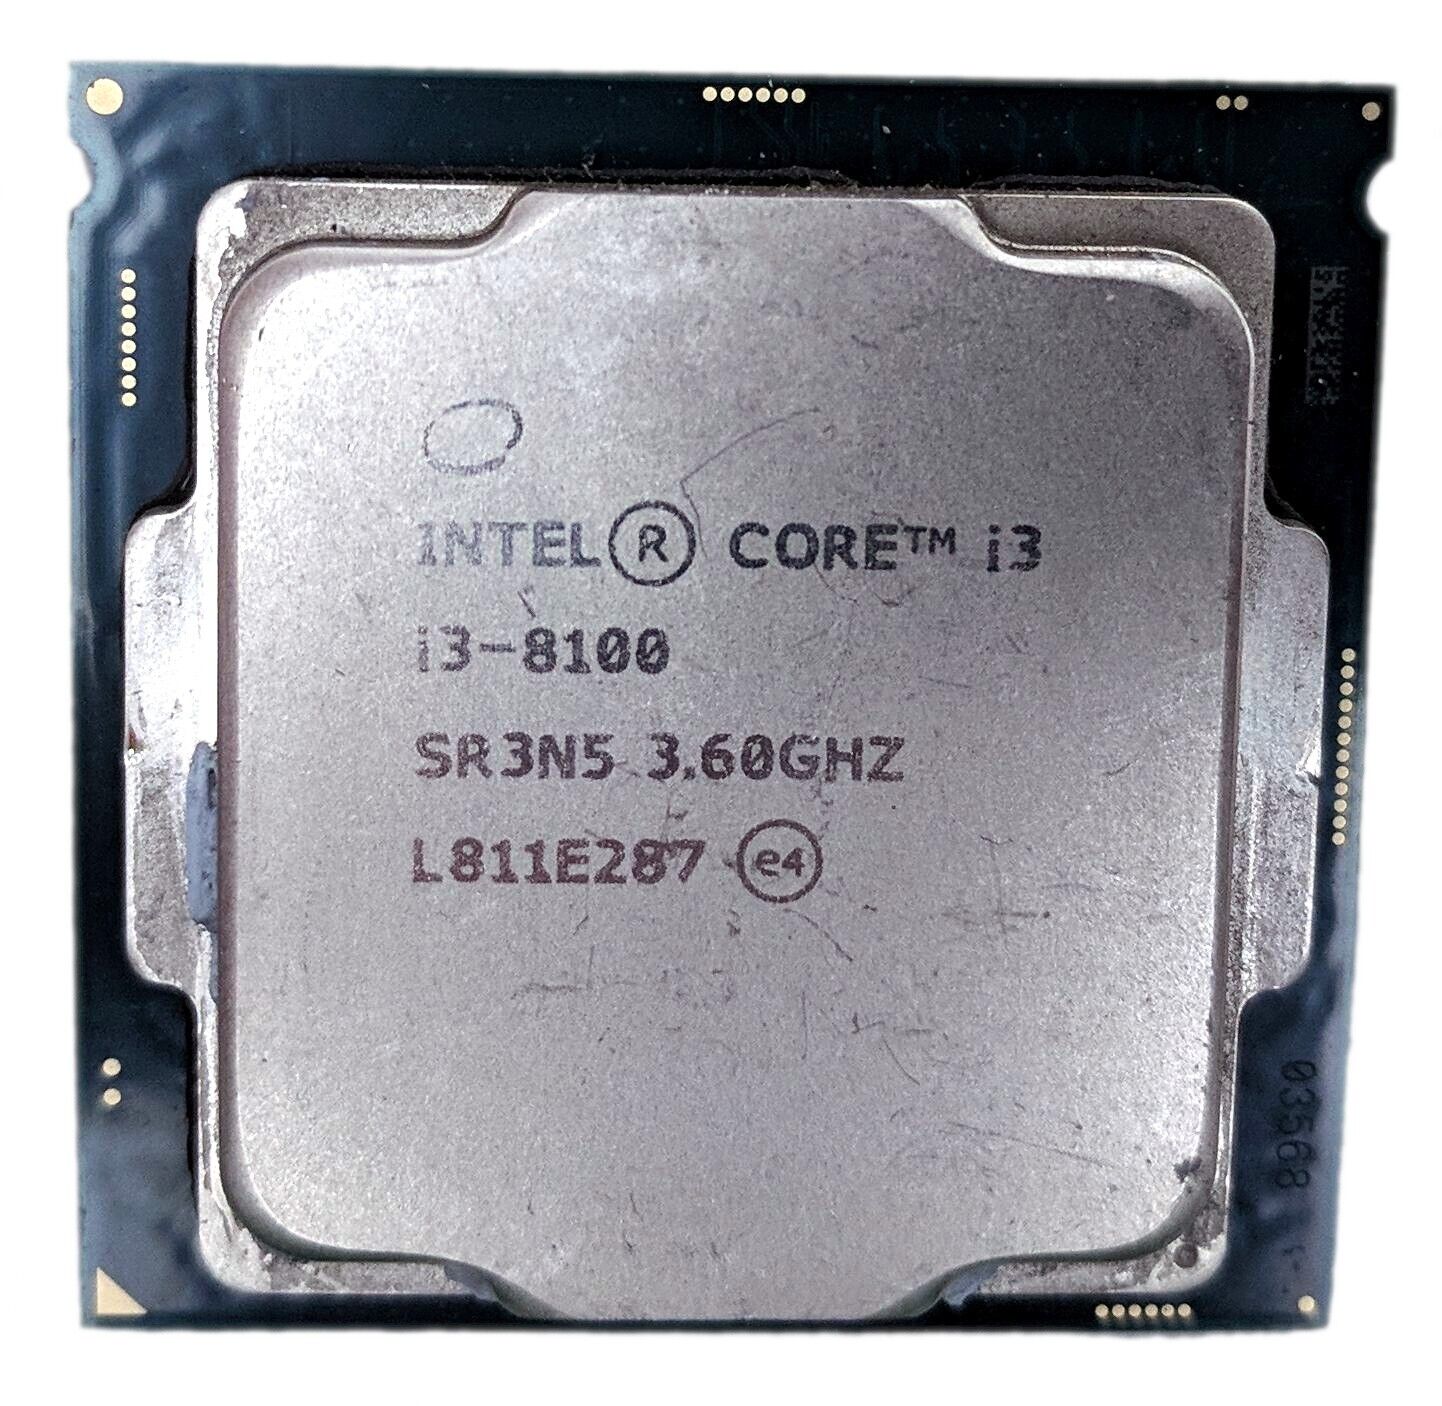 Intel Core i3-8100 3.60GHz Quad-Core 6MB LGA 1151/Socket H4 CPU Processor SR3N5